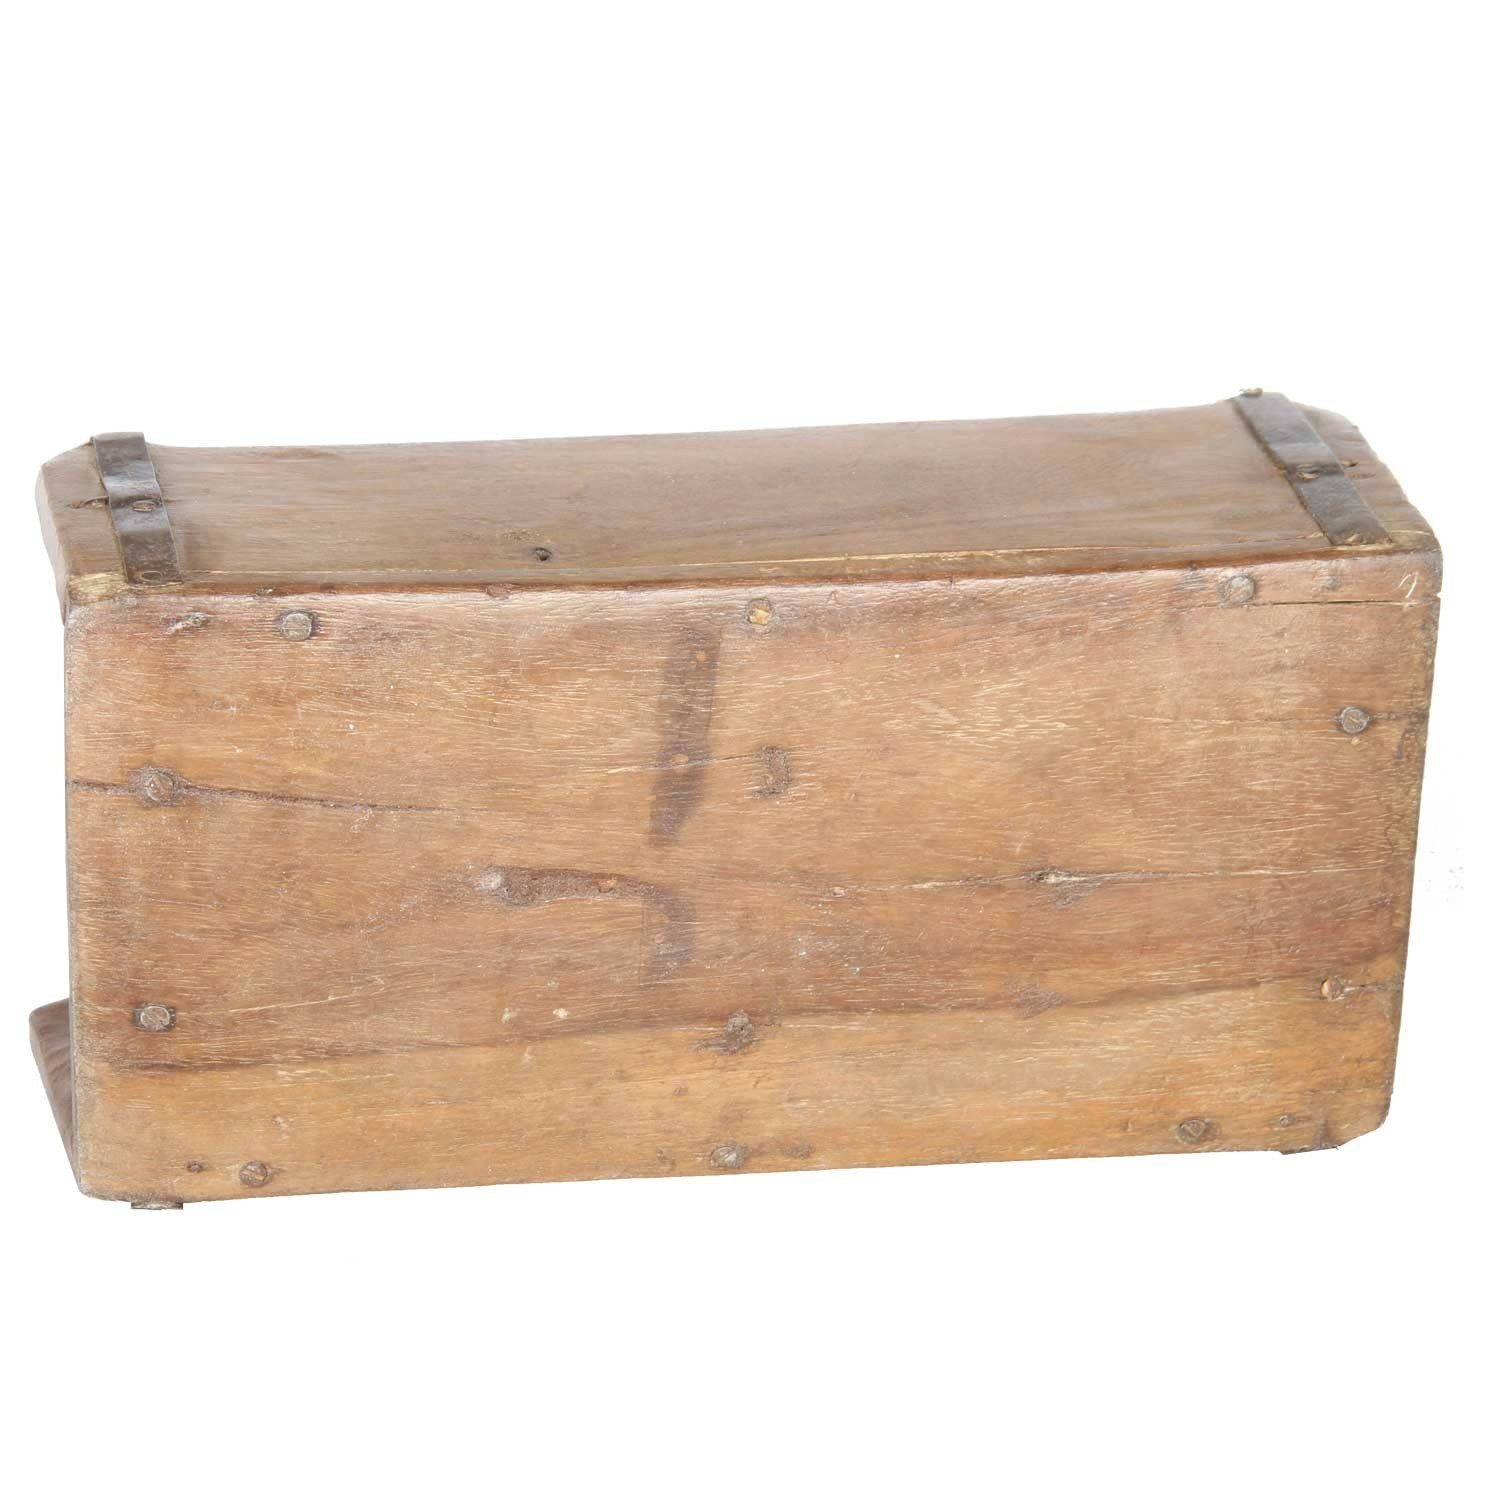 Alte Ziegelform Holzbox, Altholz, Kiste Moro aufbereitetes aus Vintage Balu Deko Altholz, Aufbewahrungsbox Casa aus Ziegelform Backsteinform,